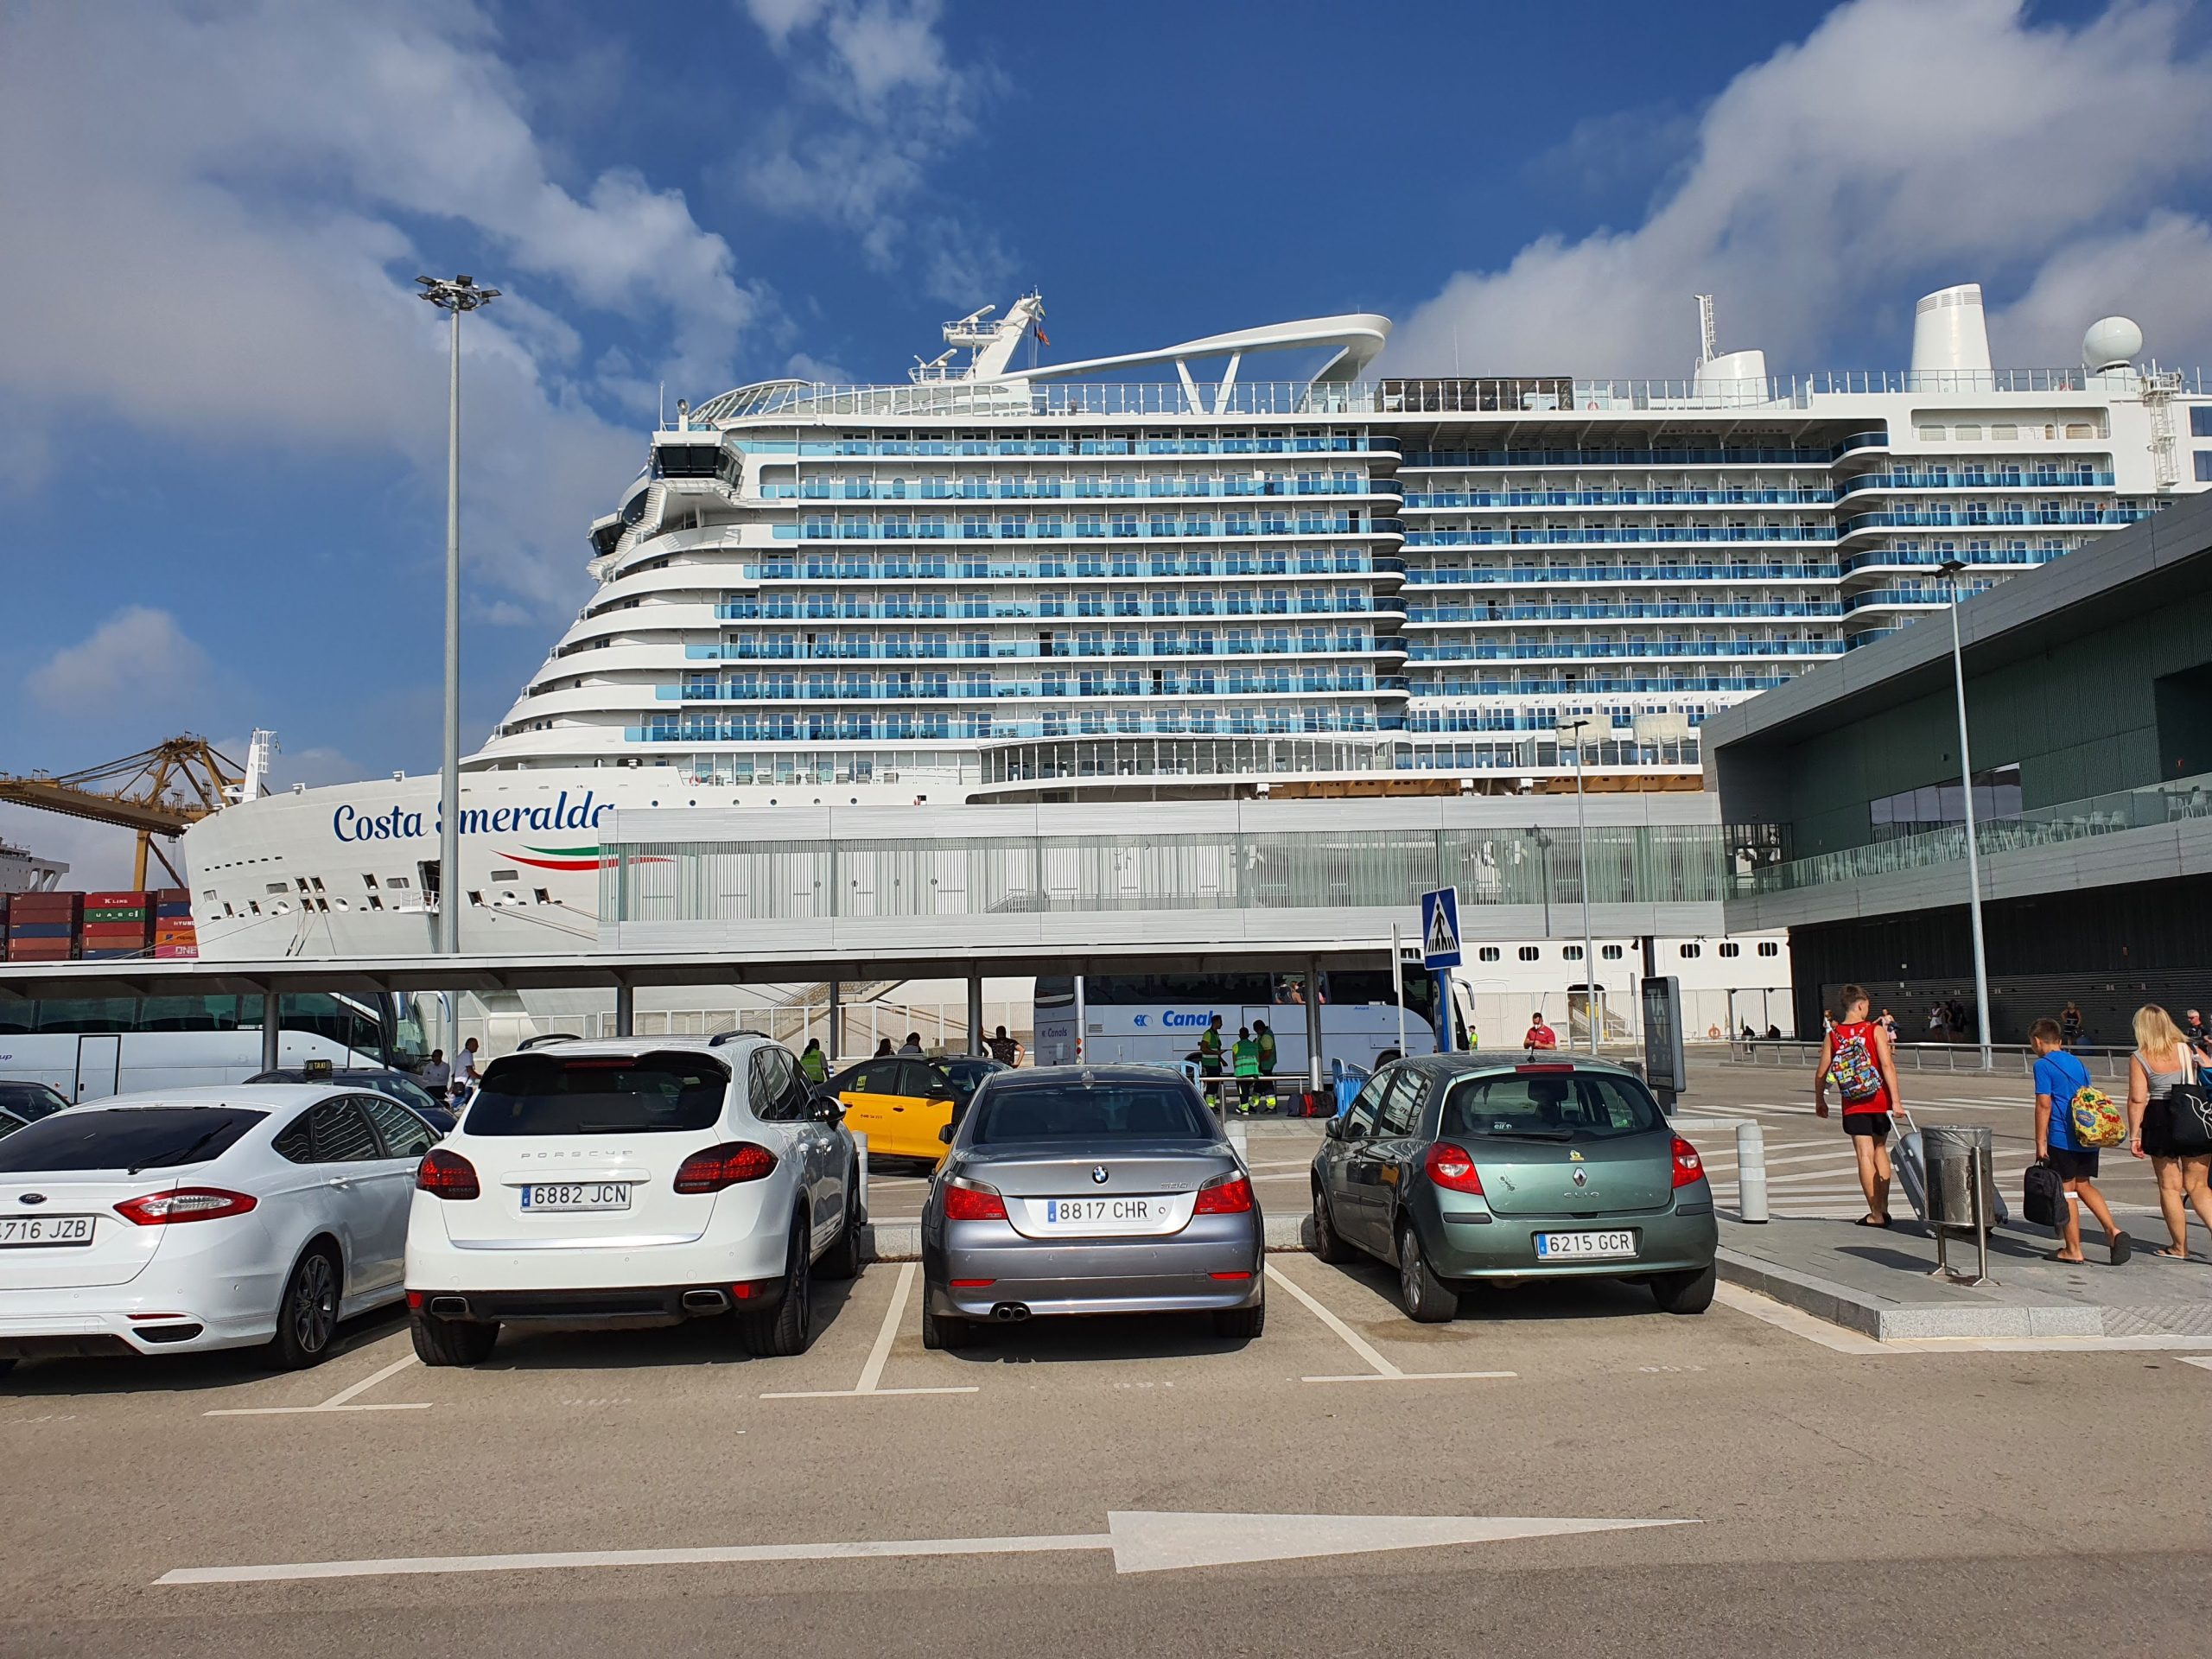 Parking de cruceros en Barcelona. unto de partida de los cruceros para familias numerosas